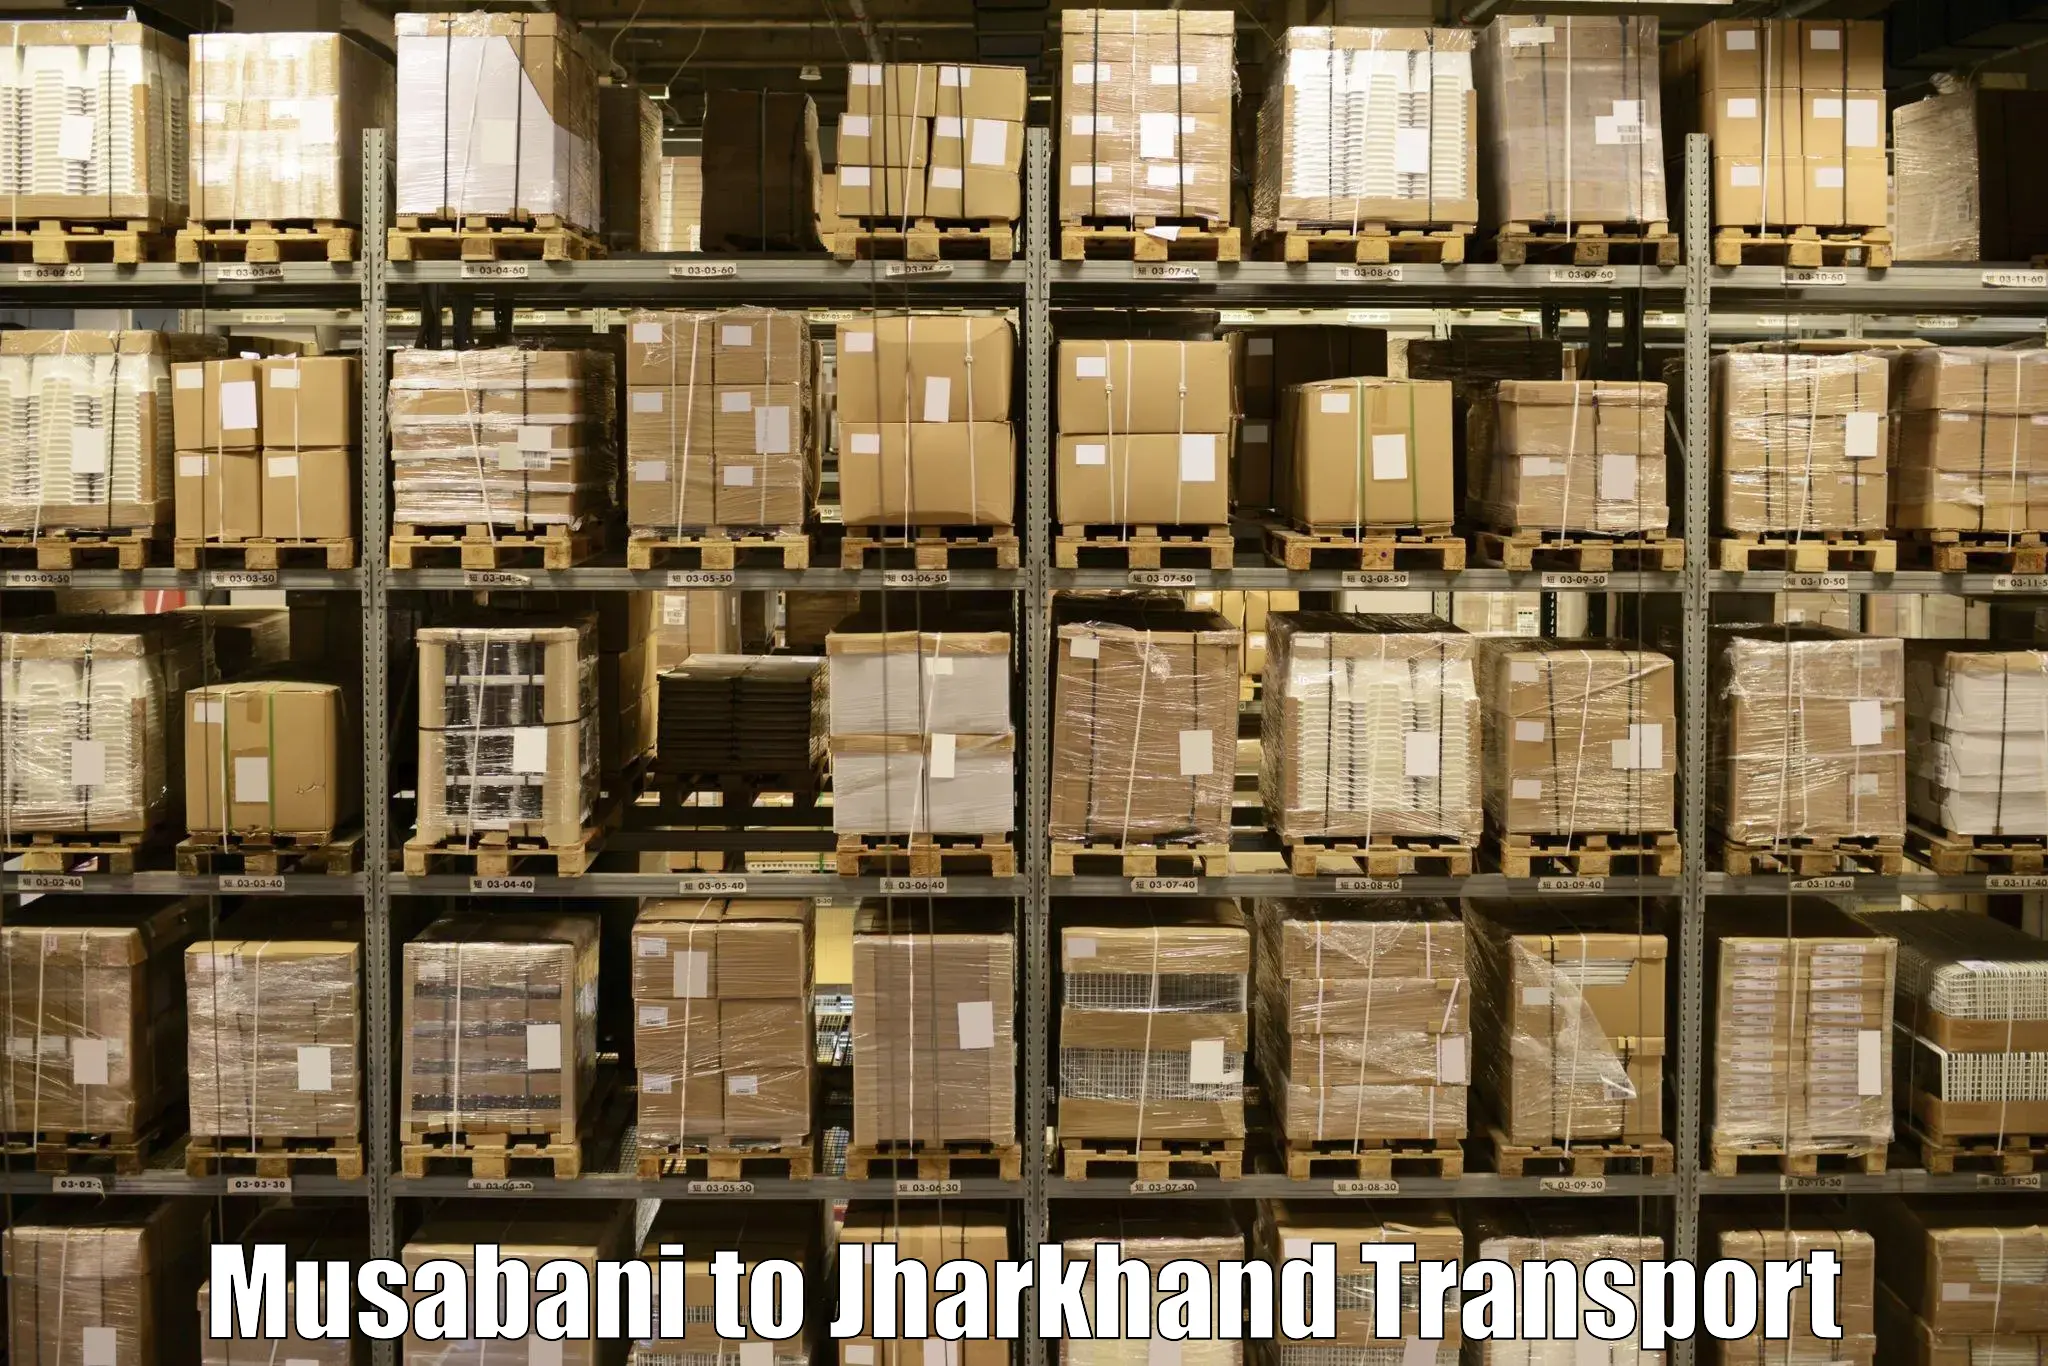 Cargo transportation services Musabani to Medininagar